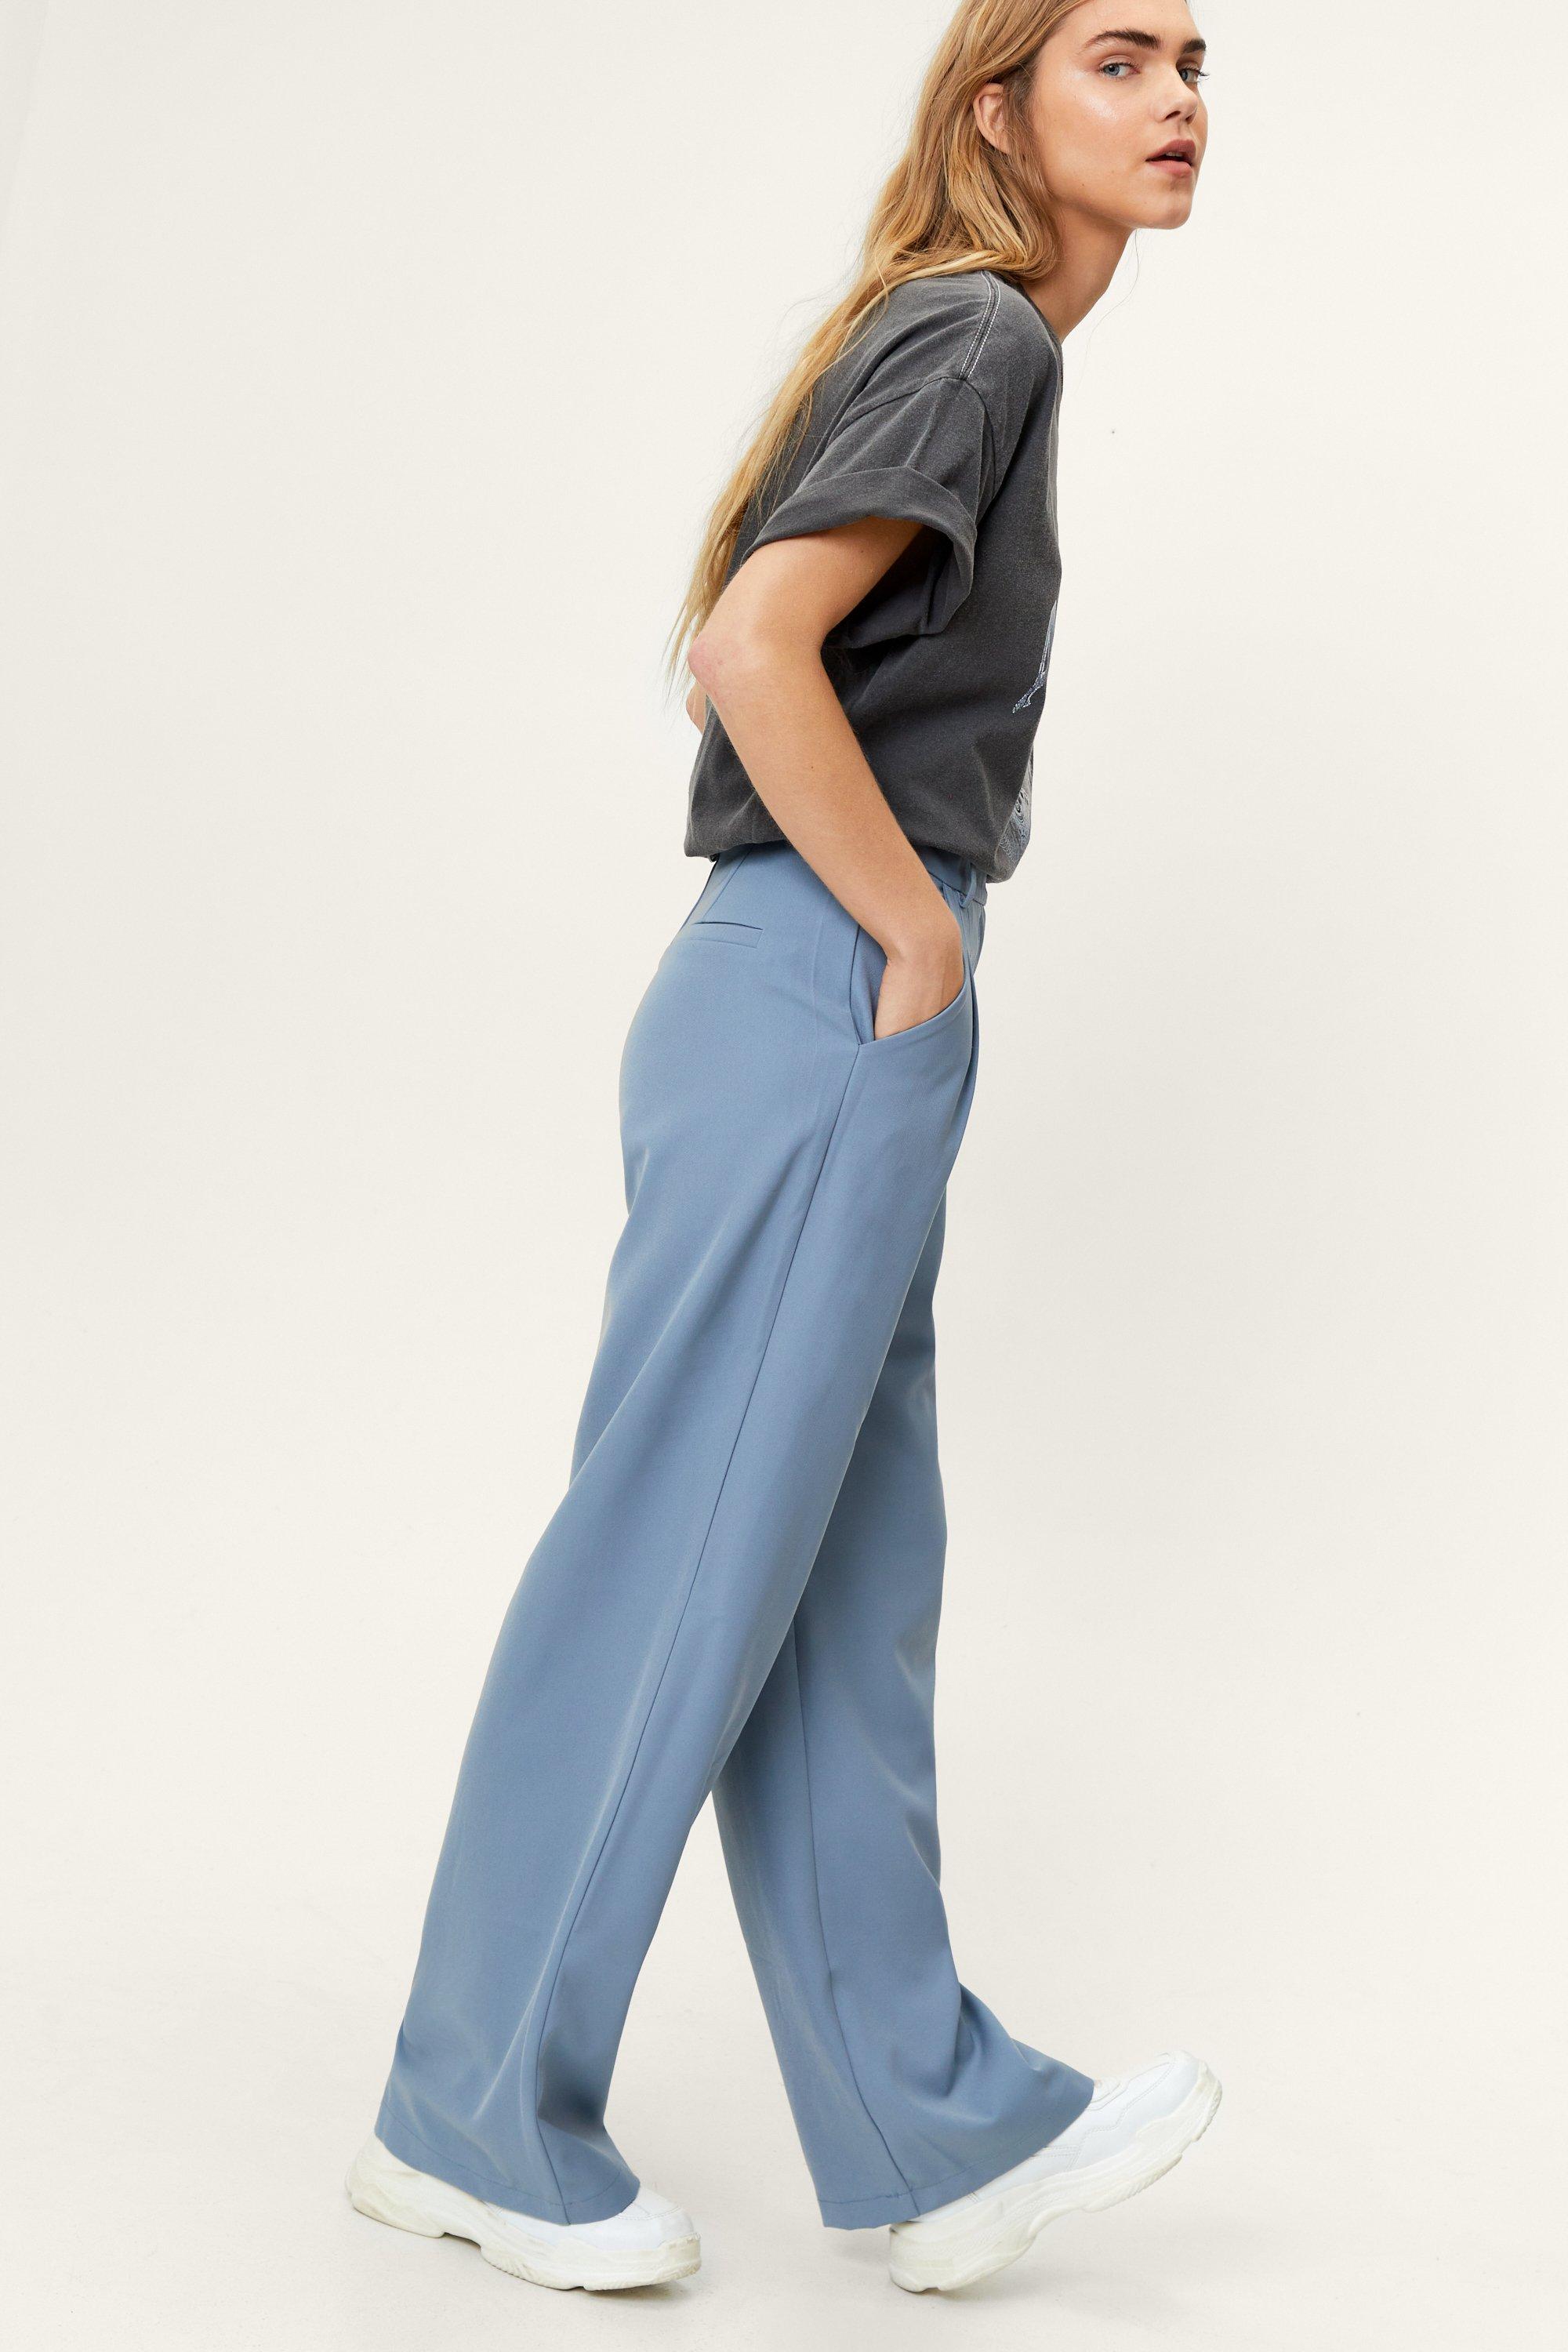 Super cliquez sur Poids Lourd En Polycoton Pantalon Bleu Marine-Taille 30"/76 Cm Taille 